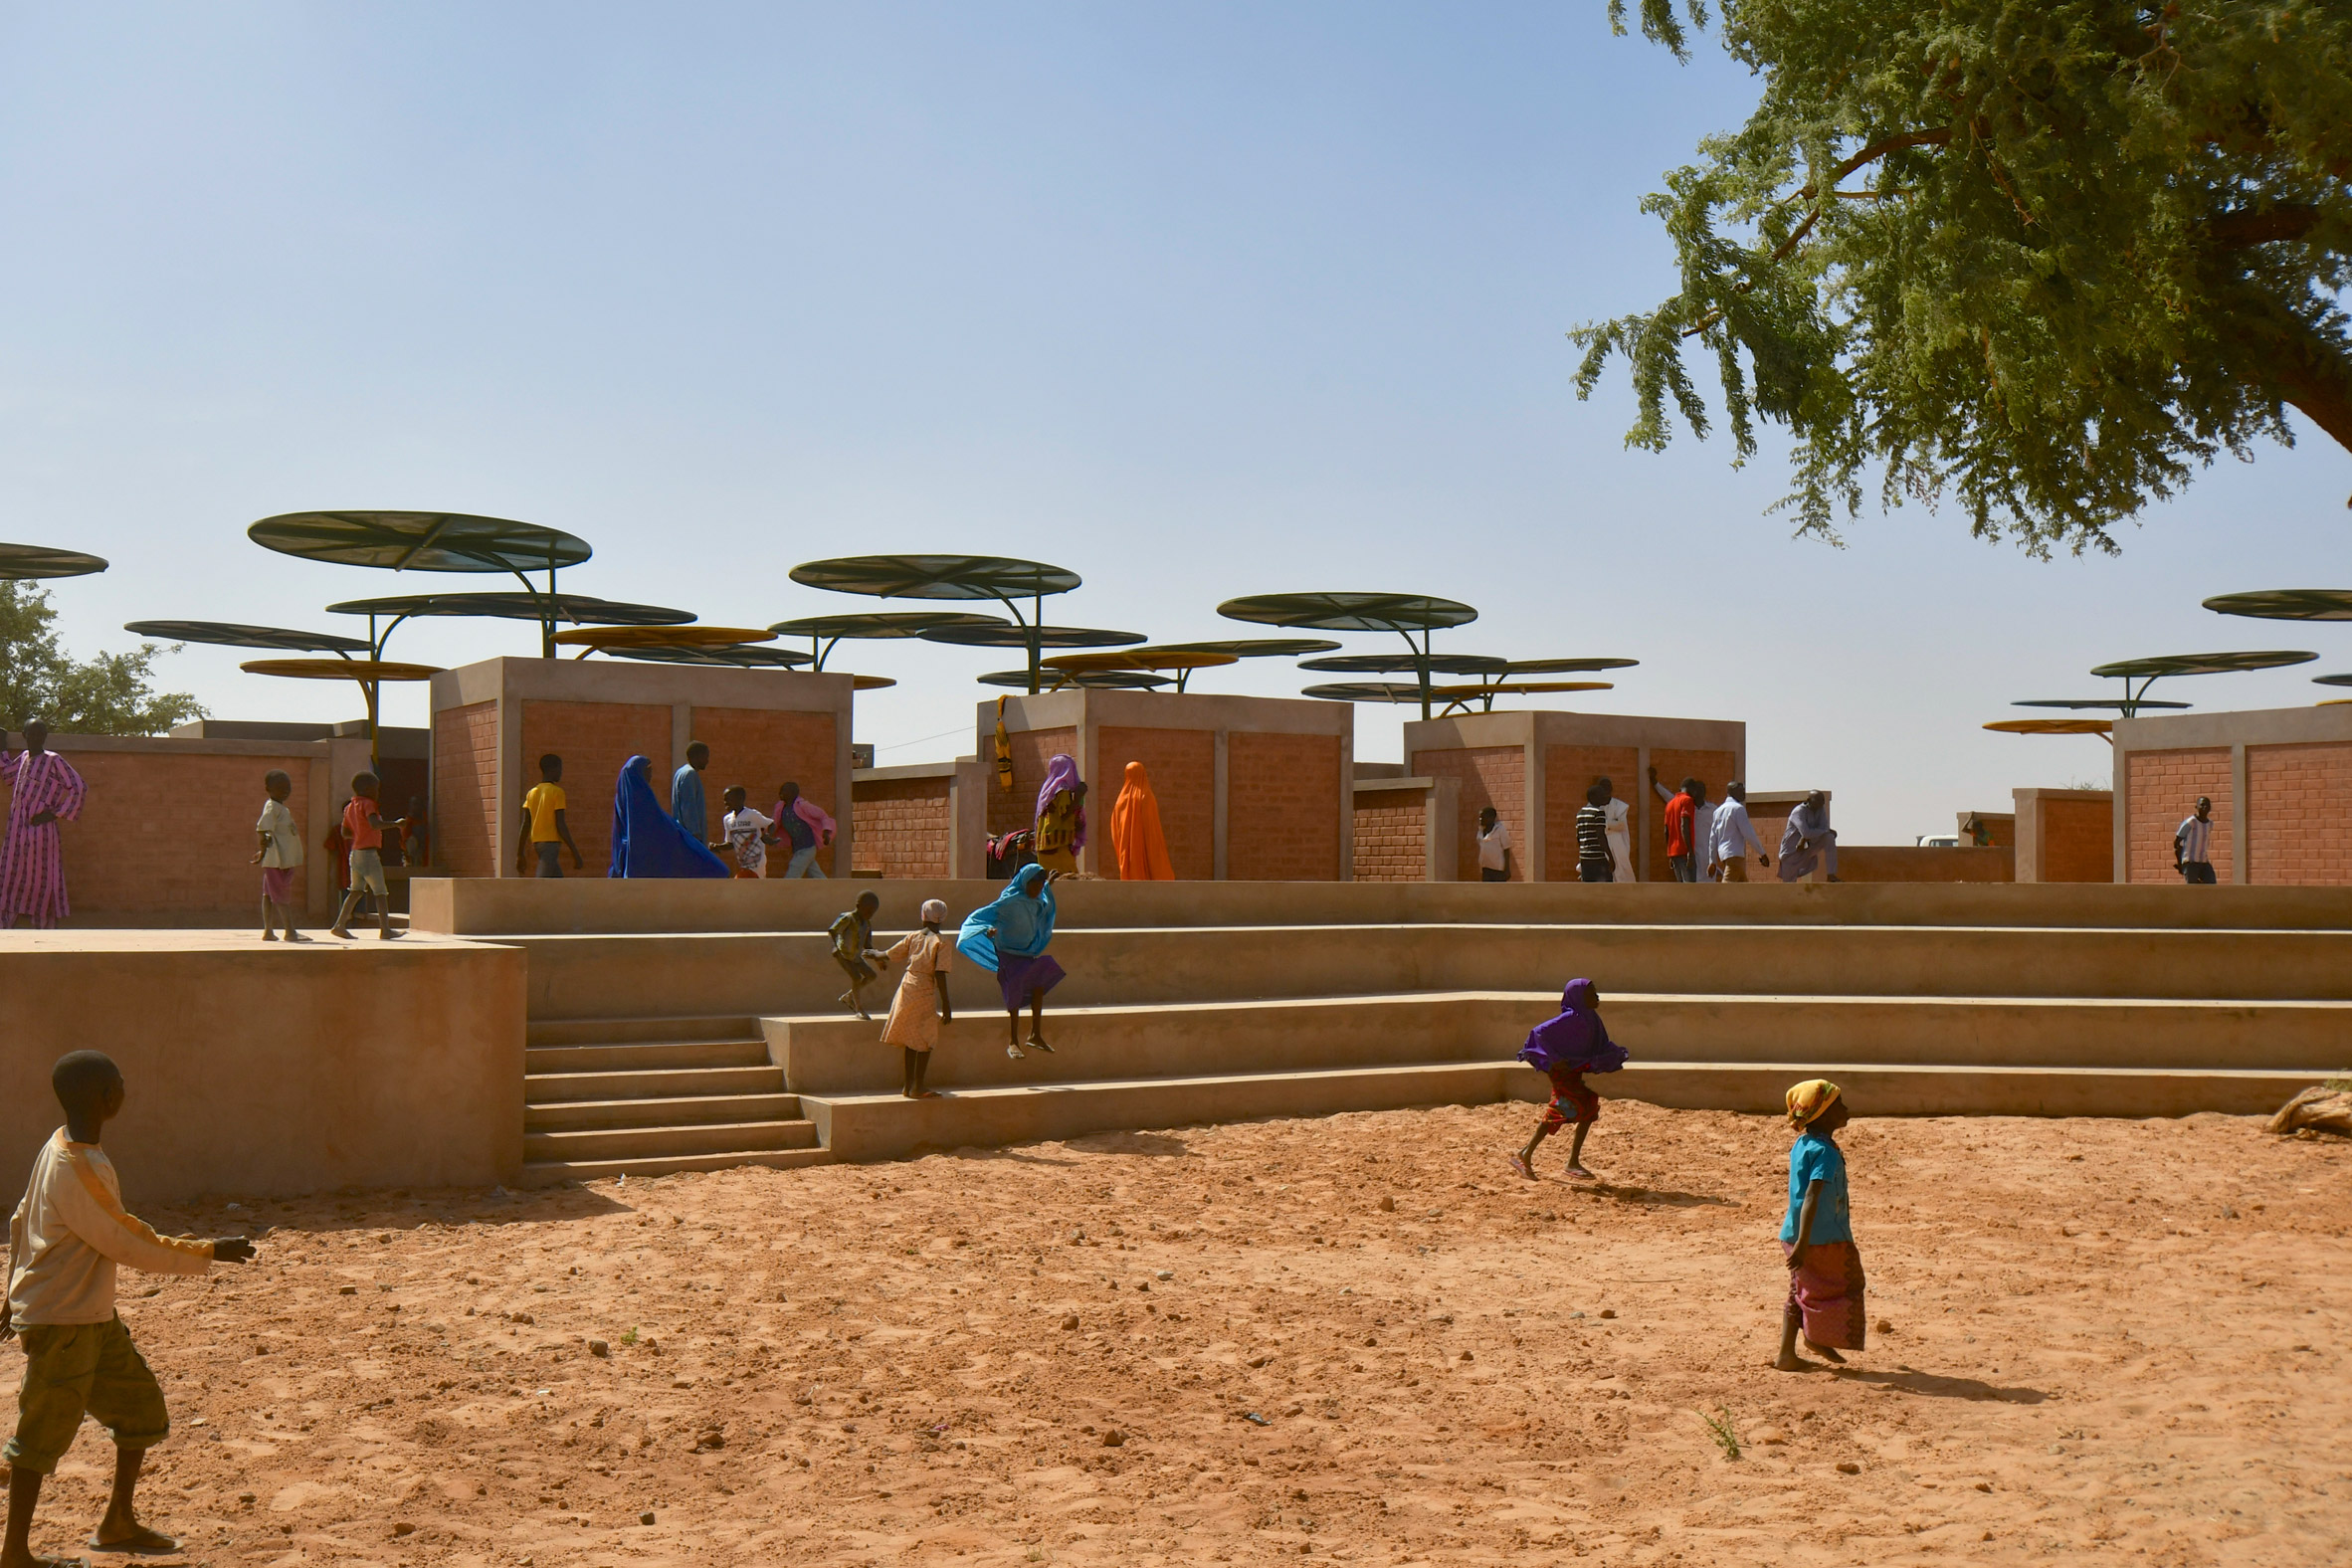 Dandaji market in Niger by Atelier Masomi